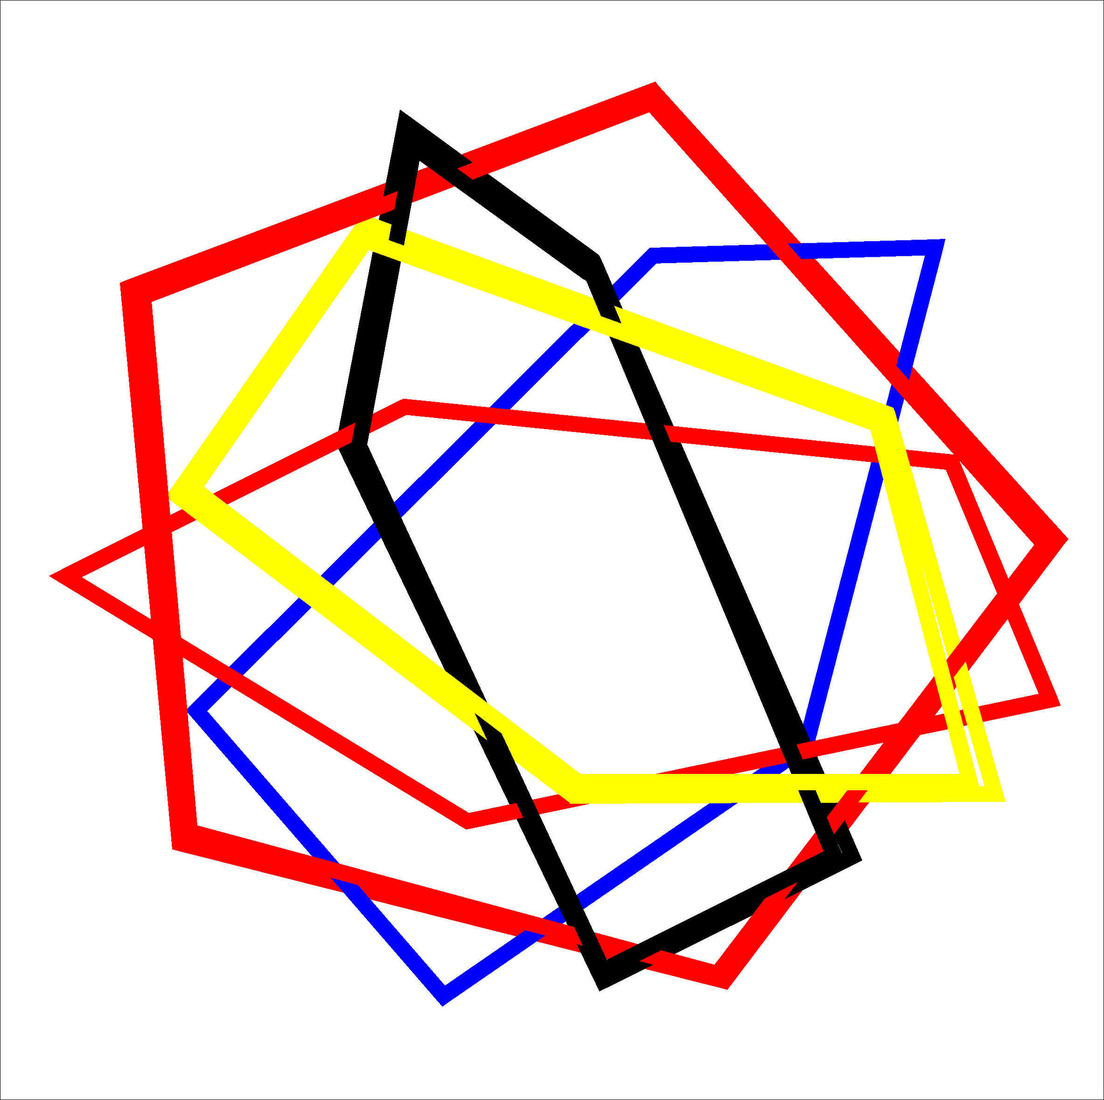 Computerkunst. Onregelmatige vijfhoek in transparant lijnenspel